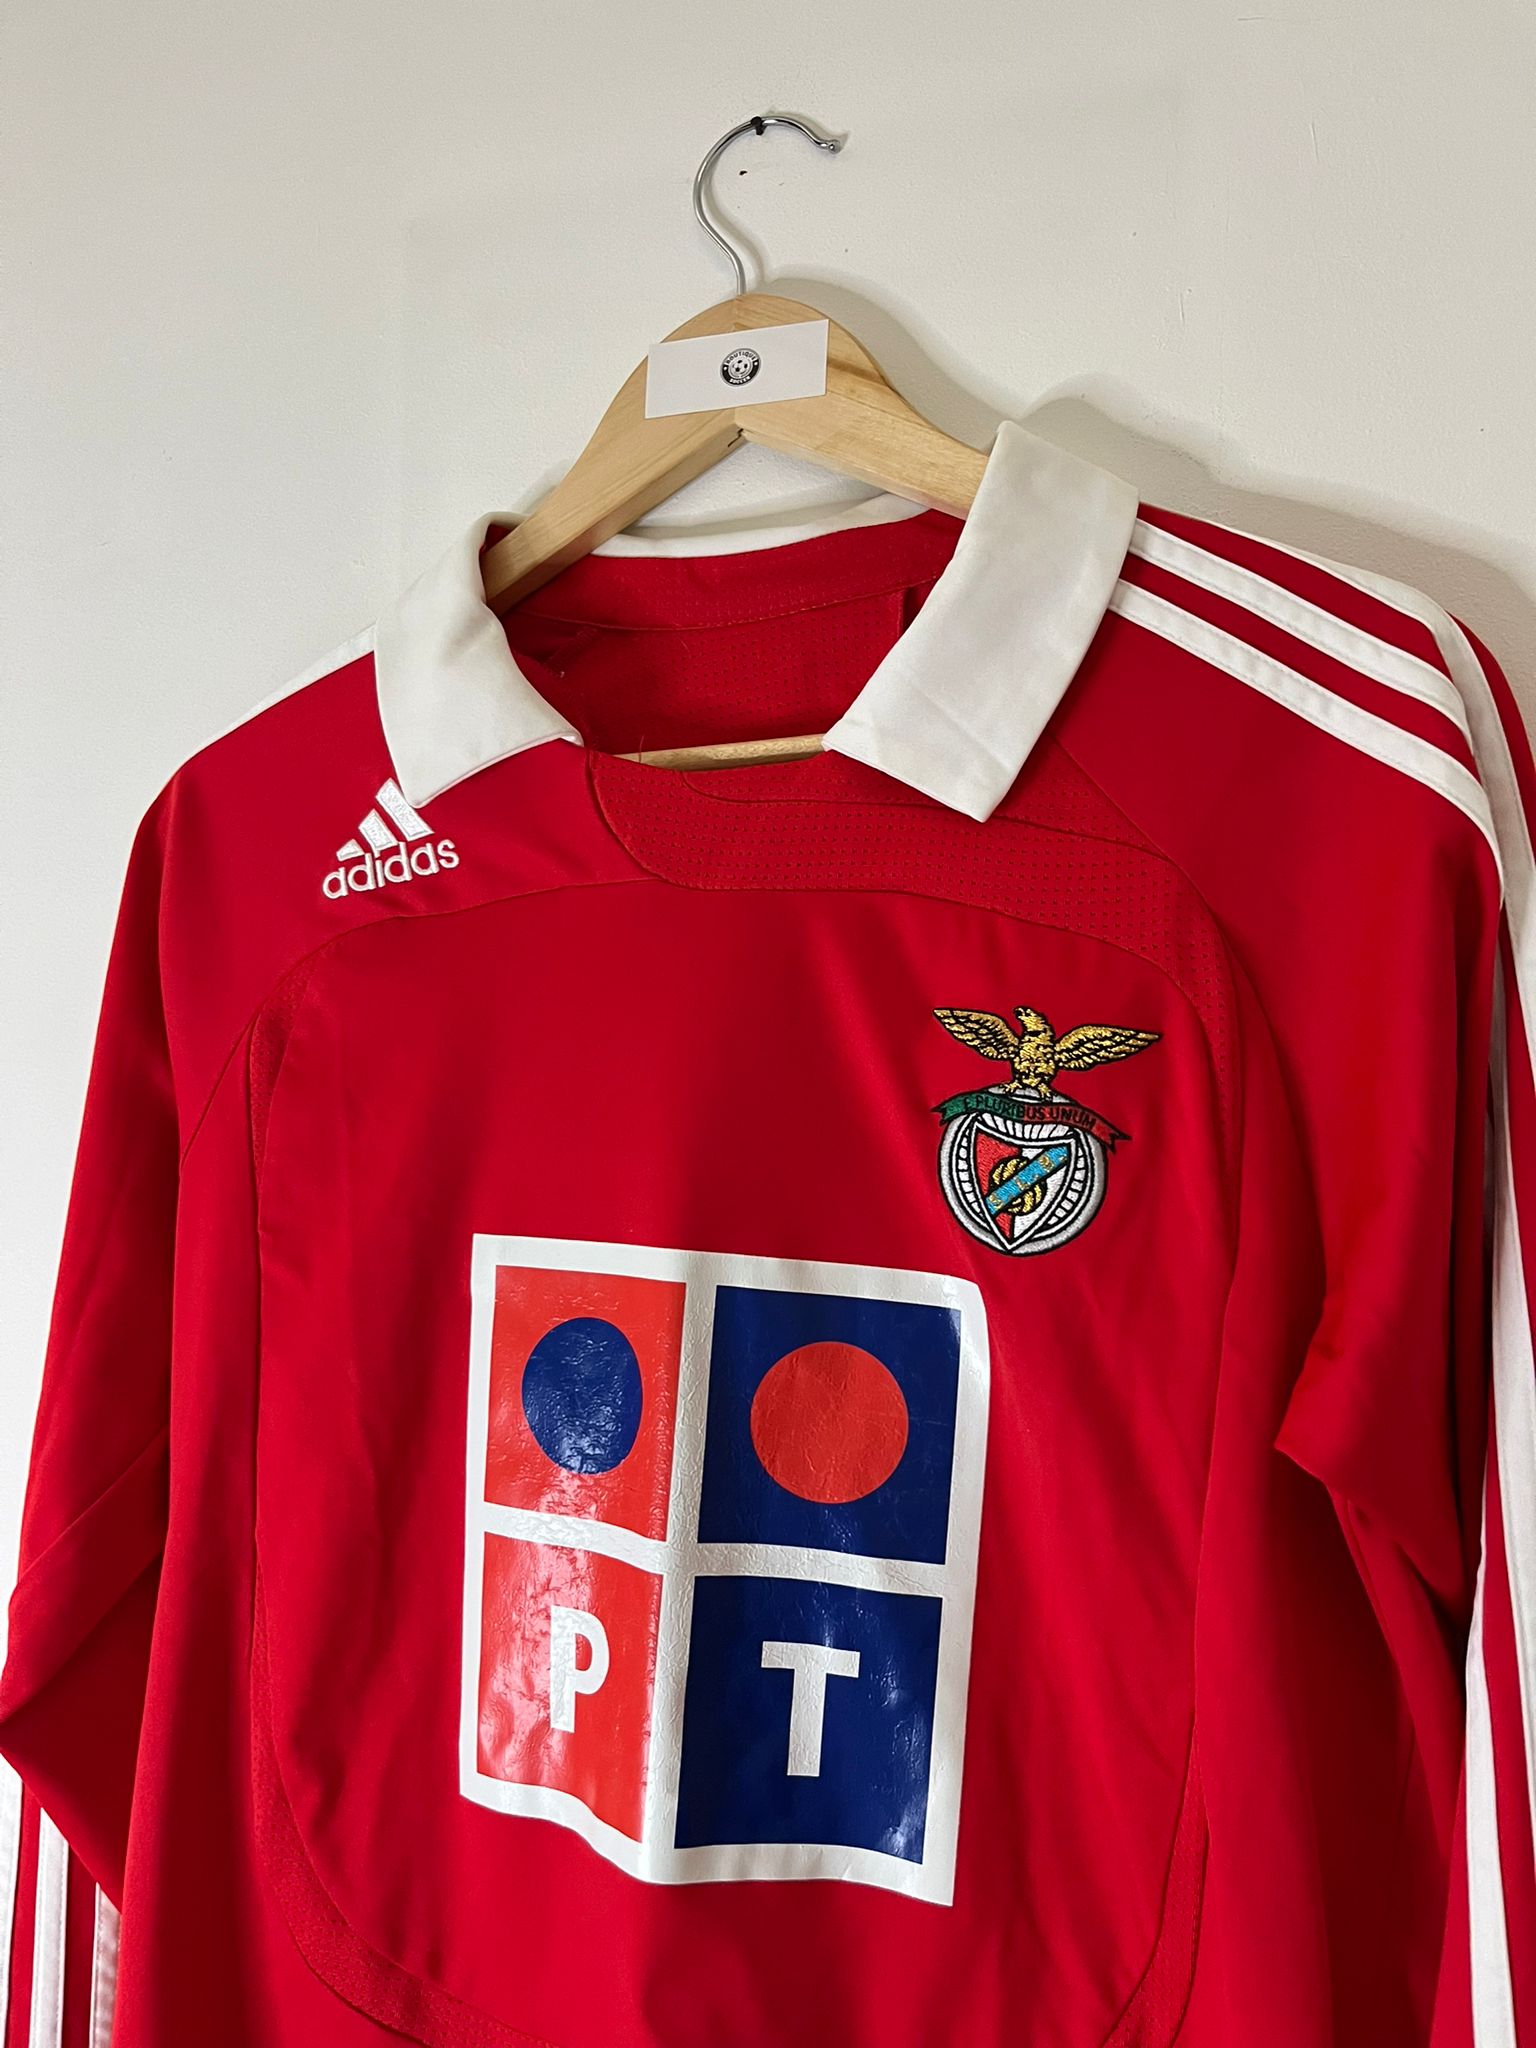 Benfica 2006-07 kit